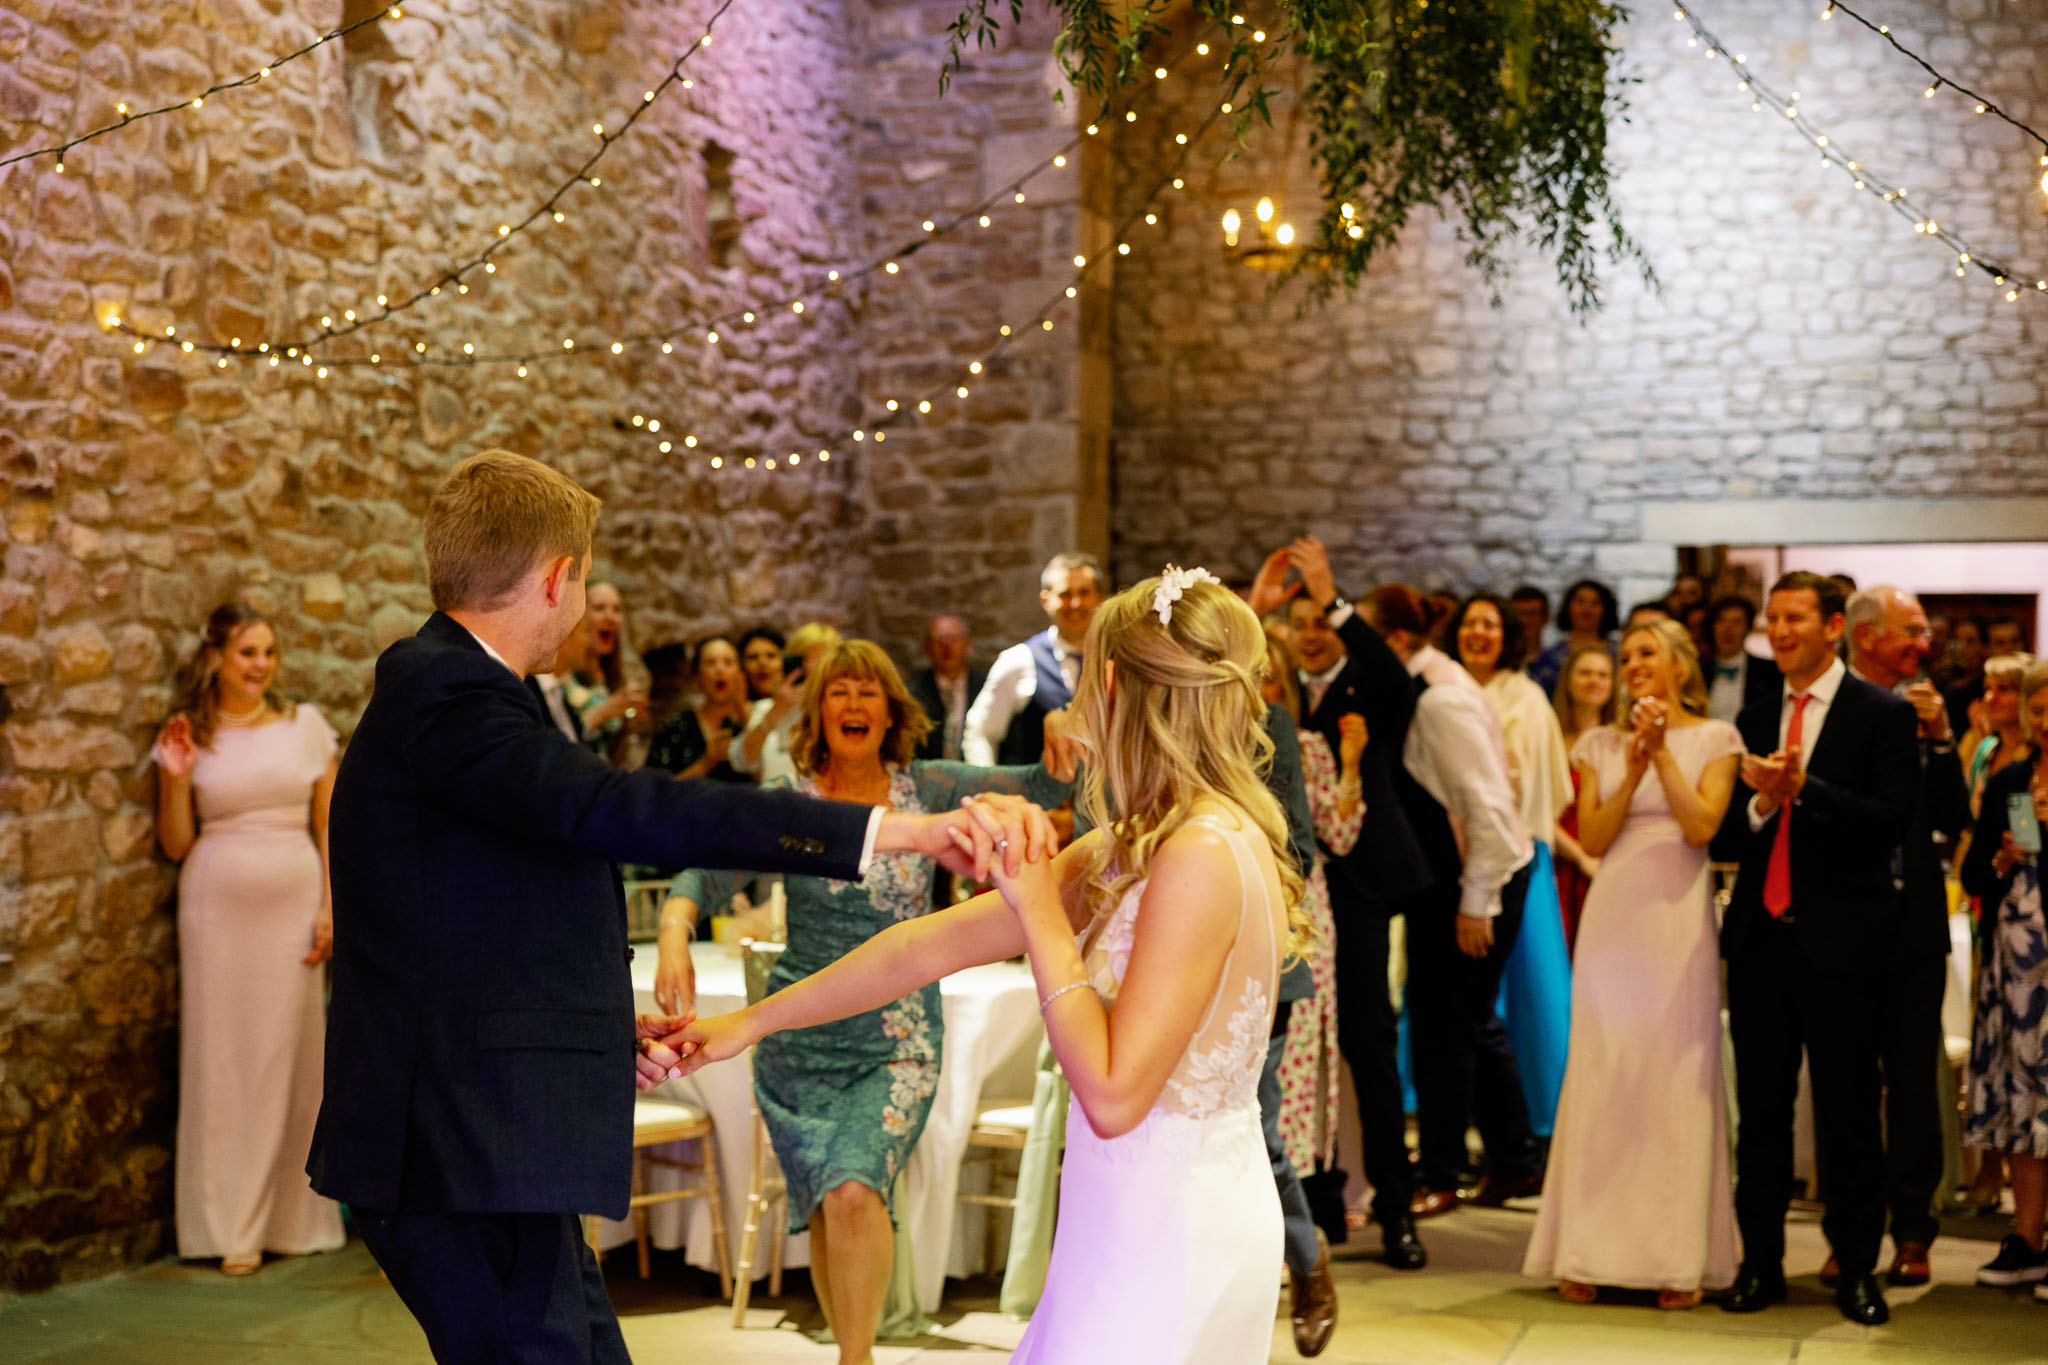 First Dance at a wedding 